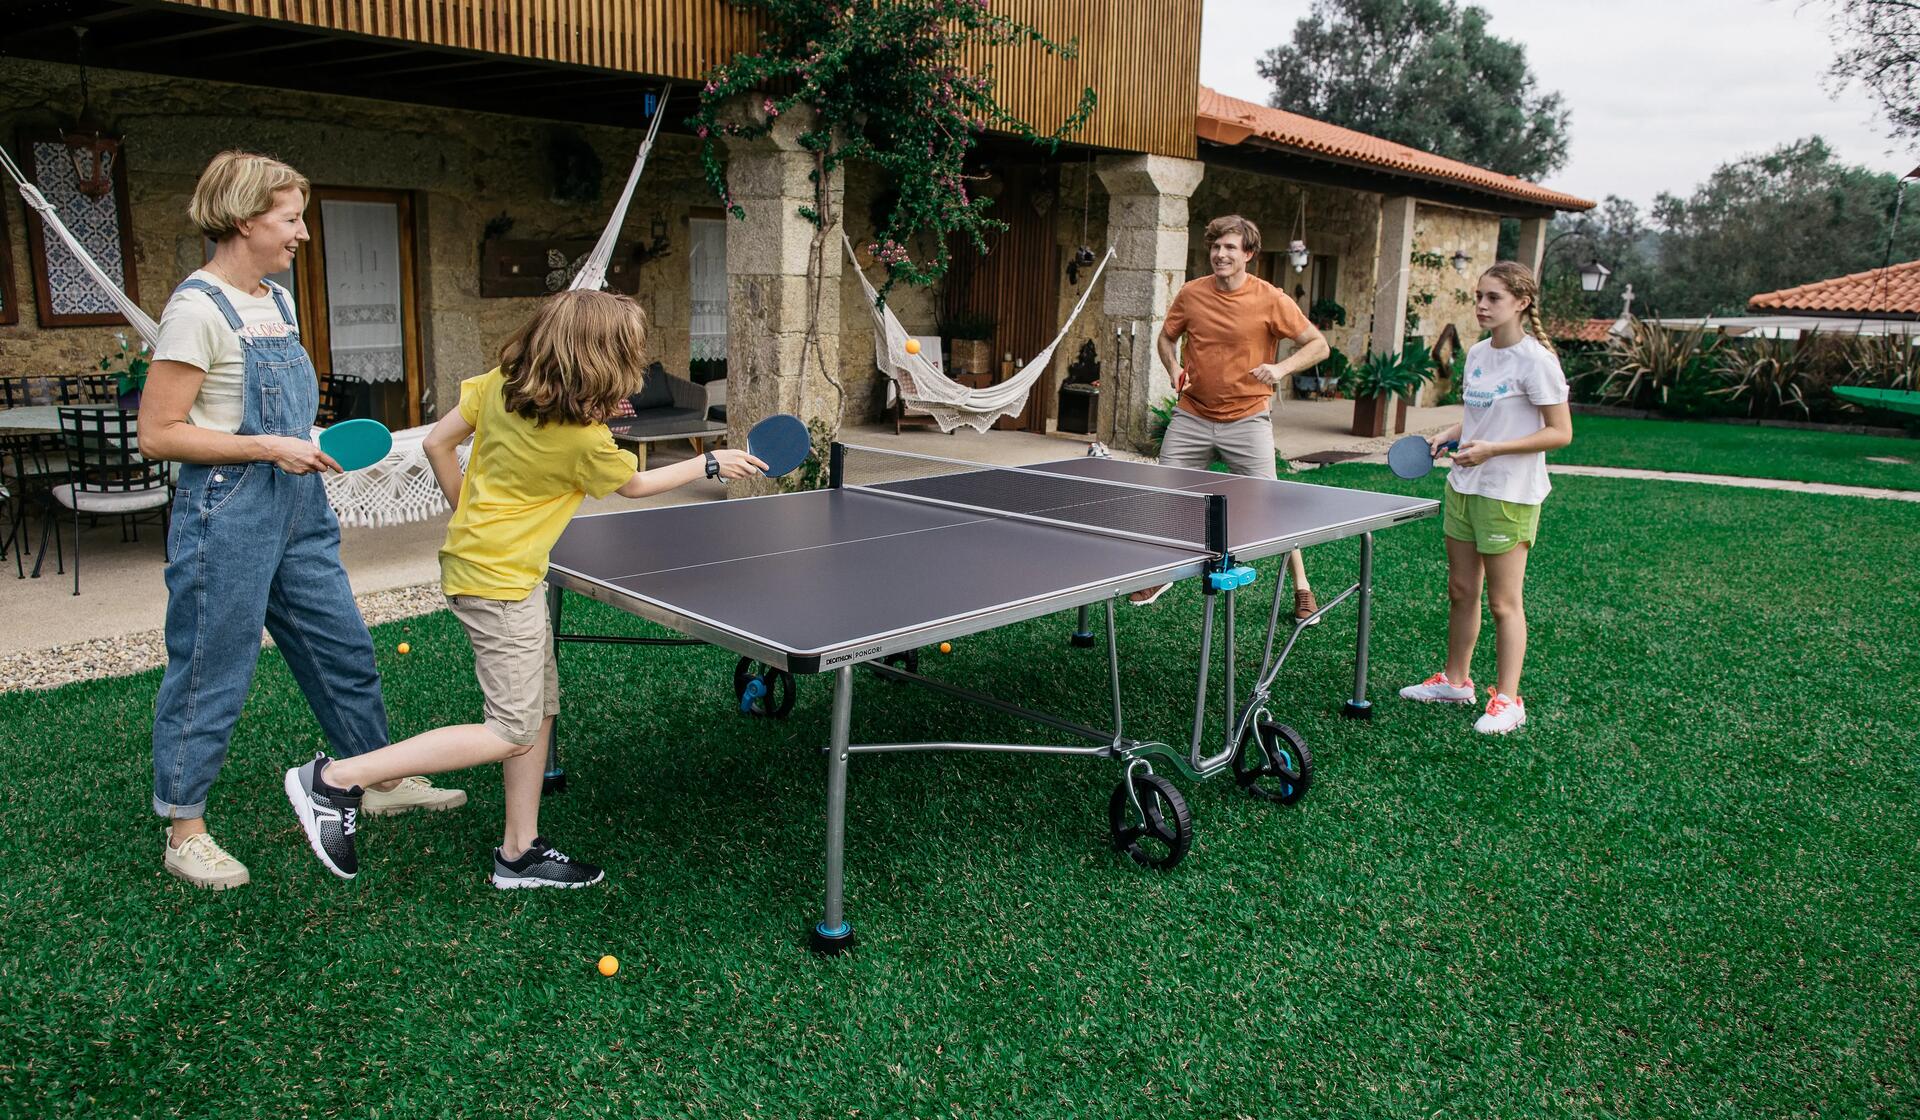 Une famille joue au tennis de table grâce à notre table de ping pong extérieure PPT 530 OUTDOOR.2 BLEUE